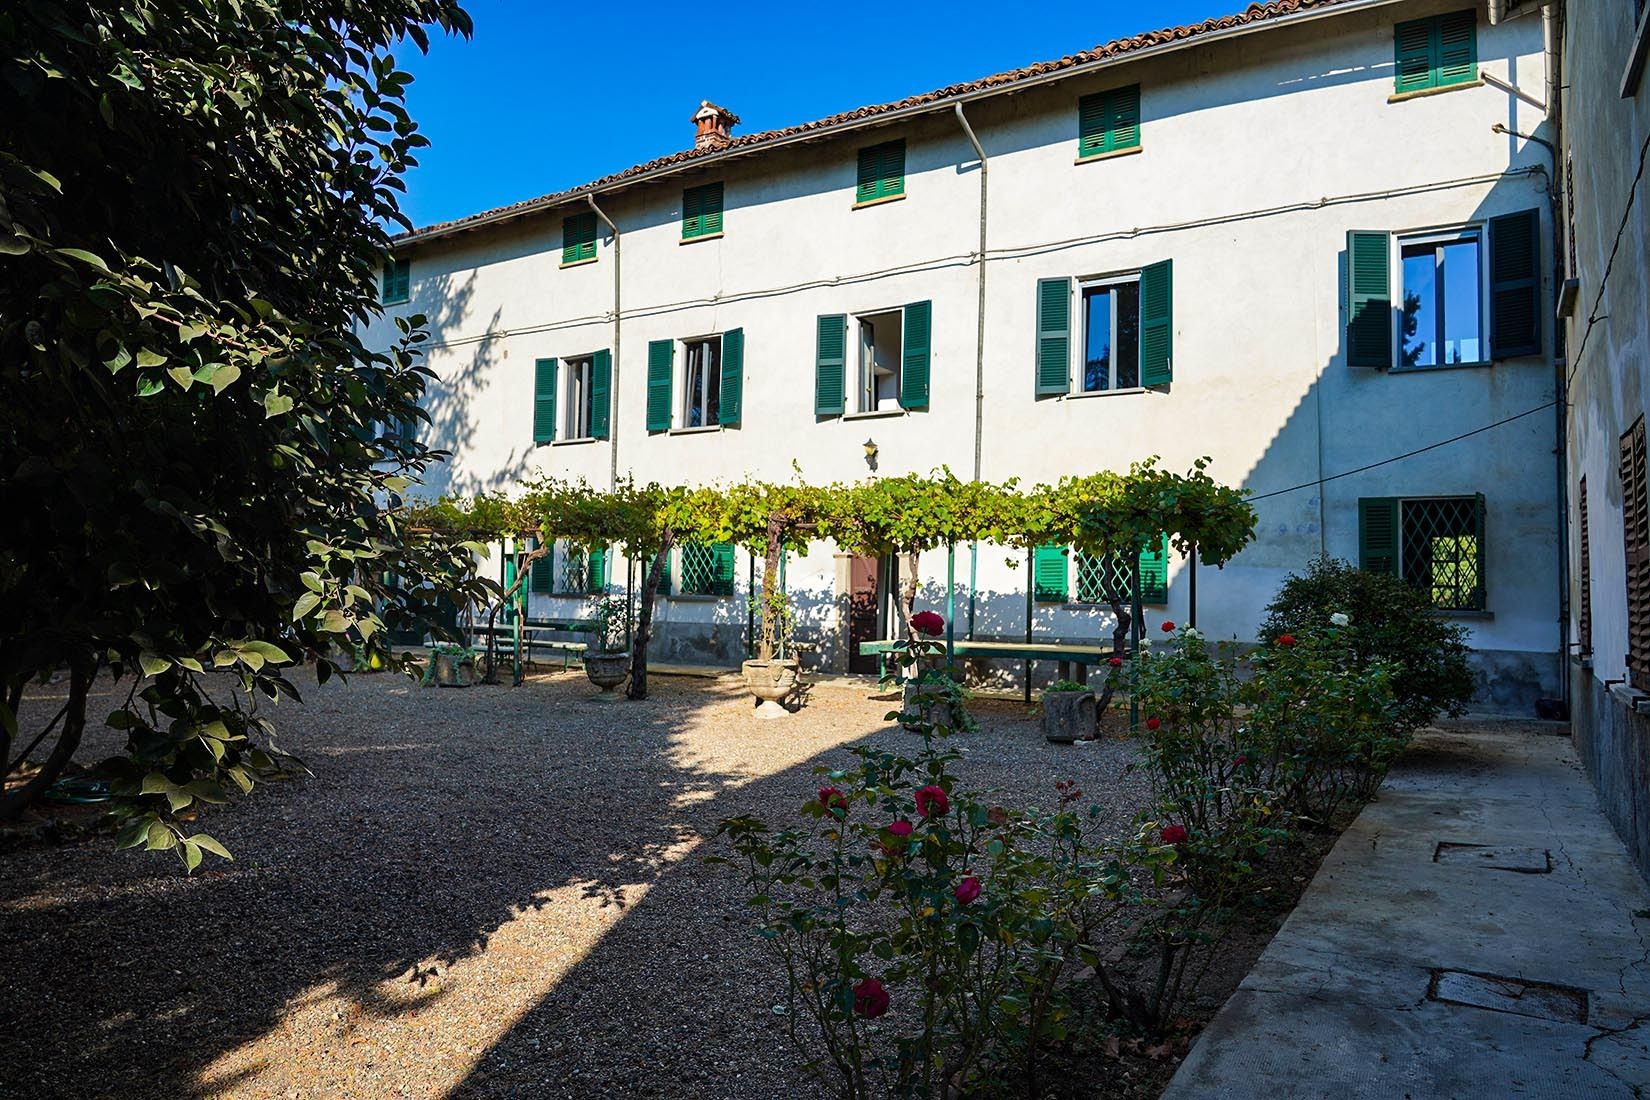 For sale cottage in quiet zone Cassine Piemonte